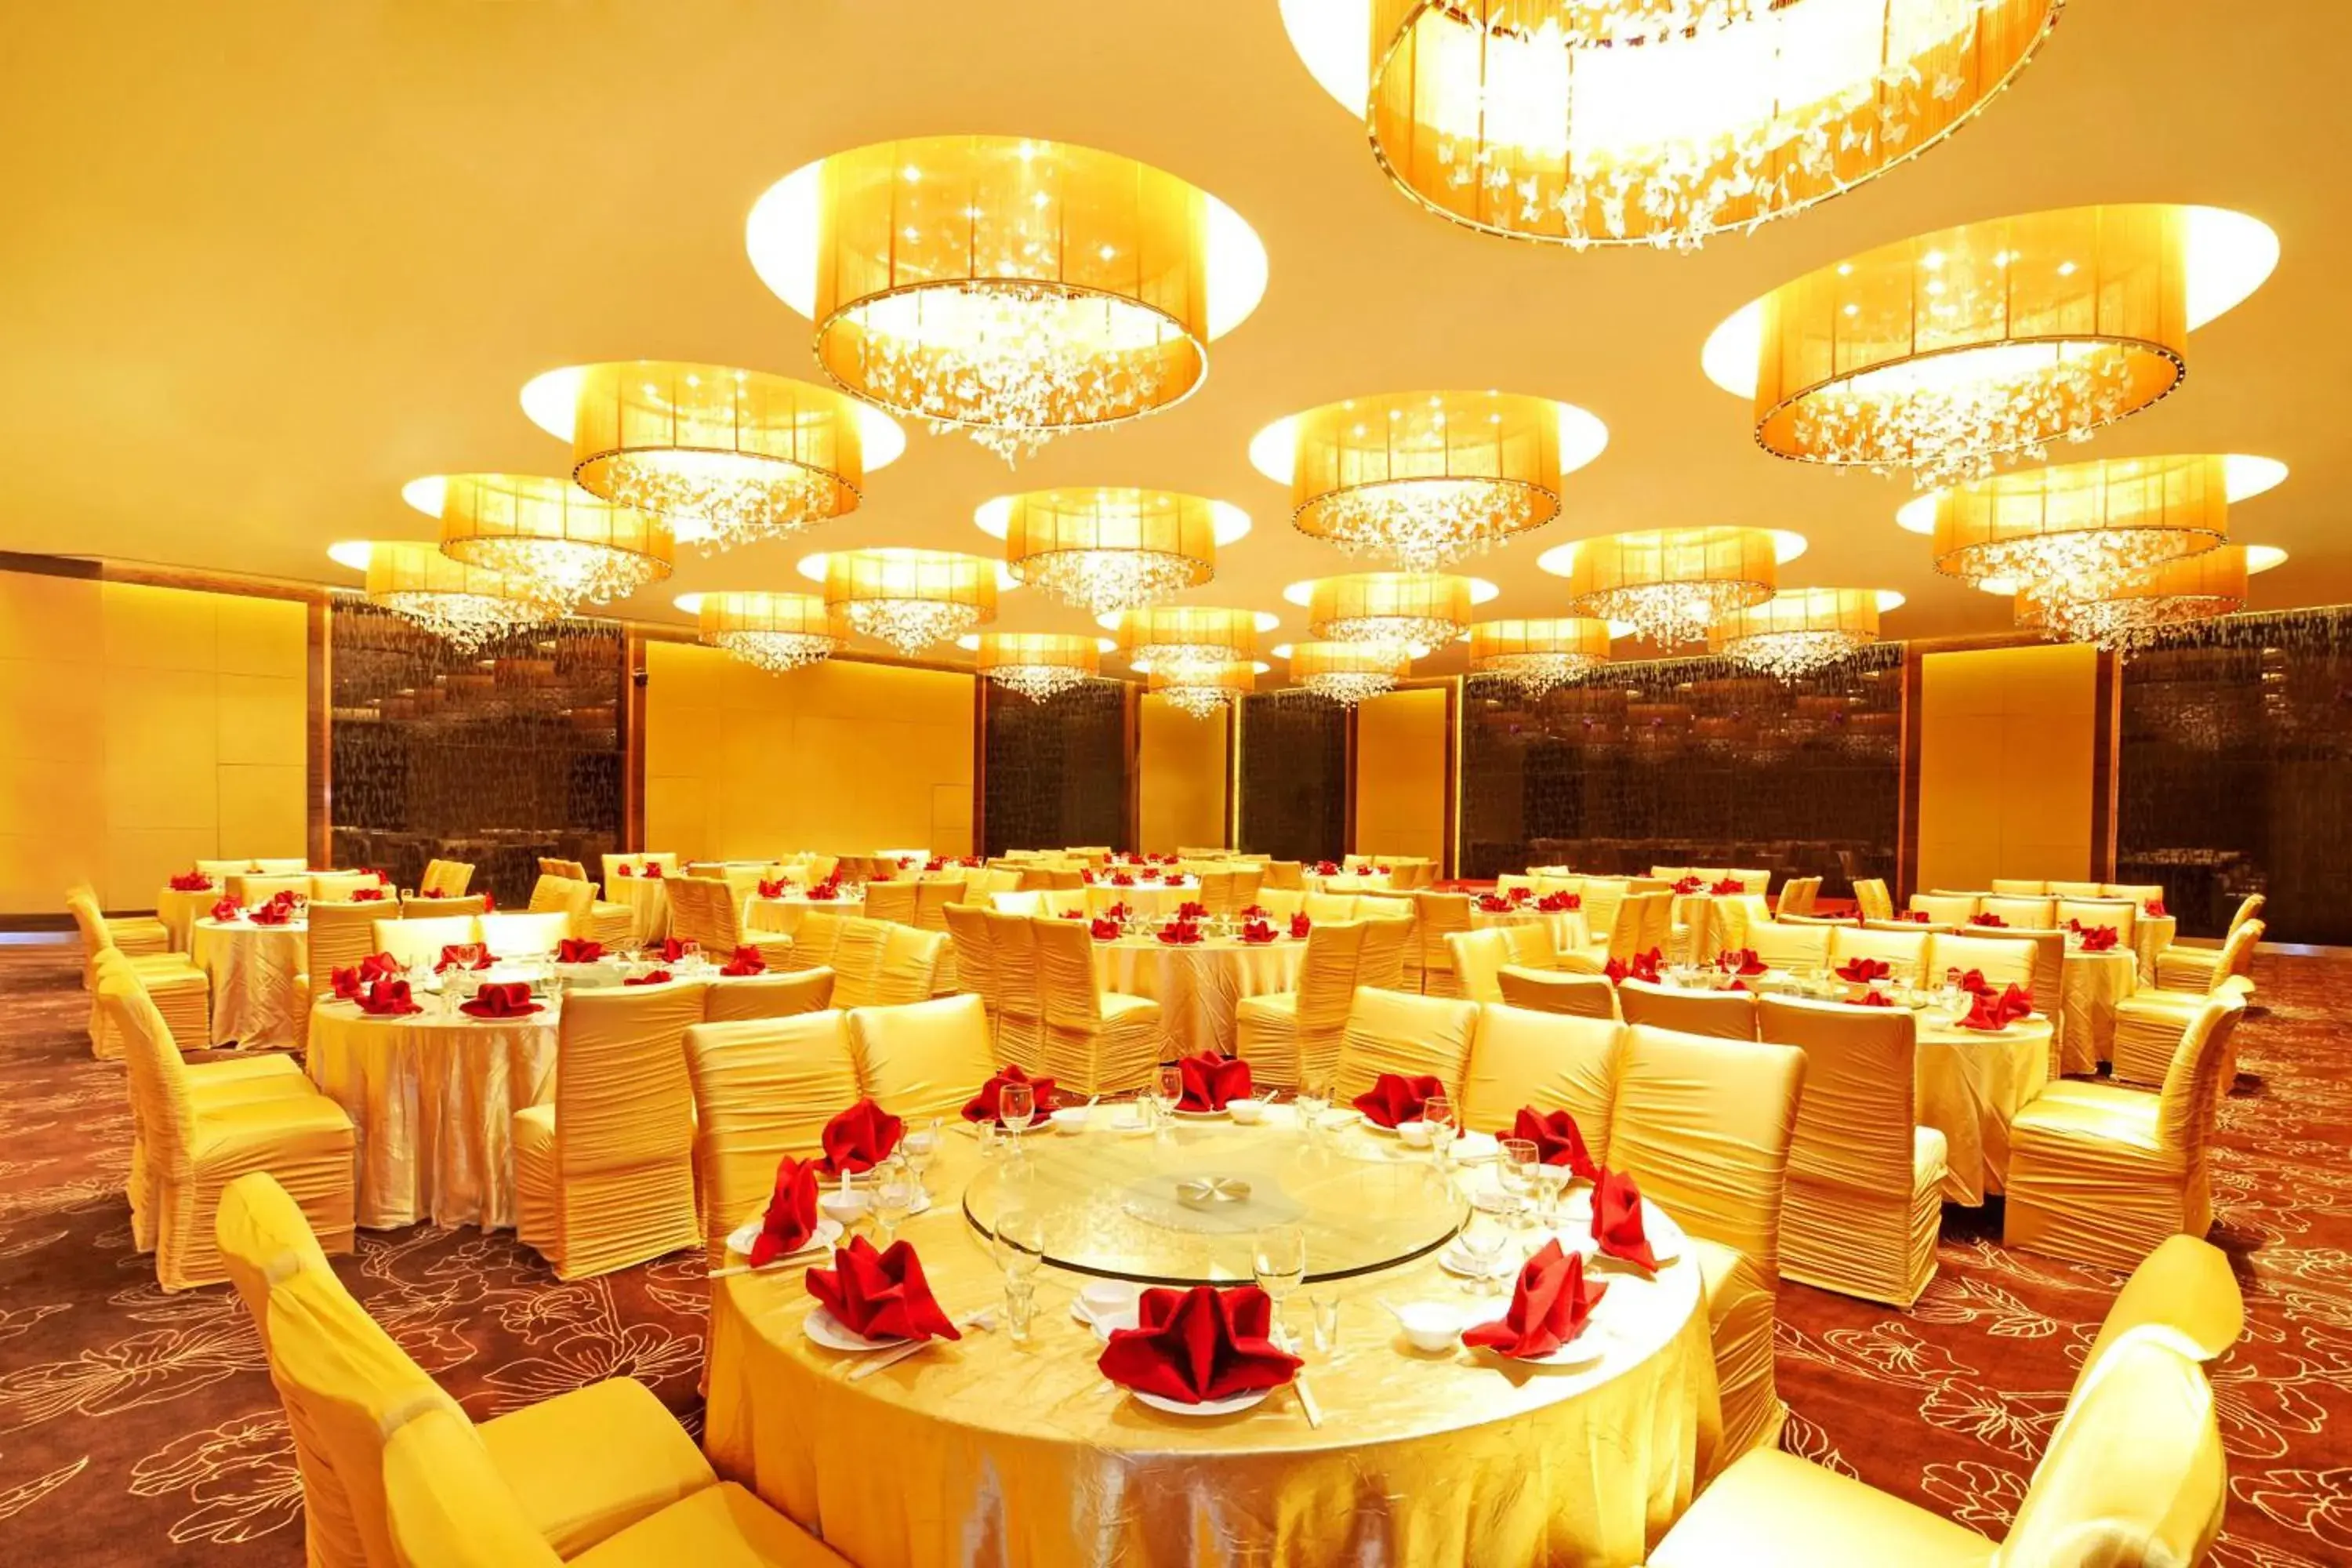 Meeting/conference room, Banquet Facilities in Aloft Zhengzhou Shangjie